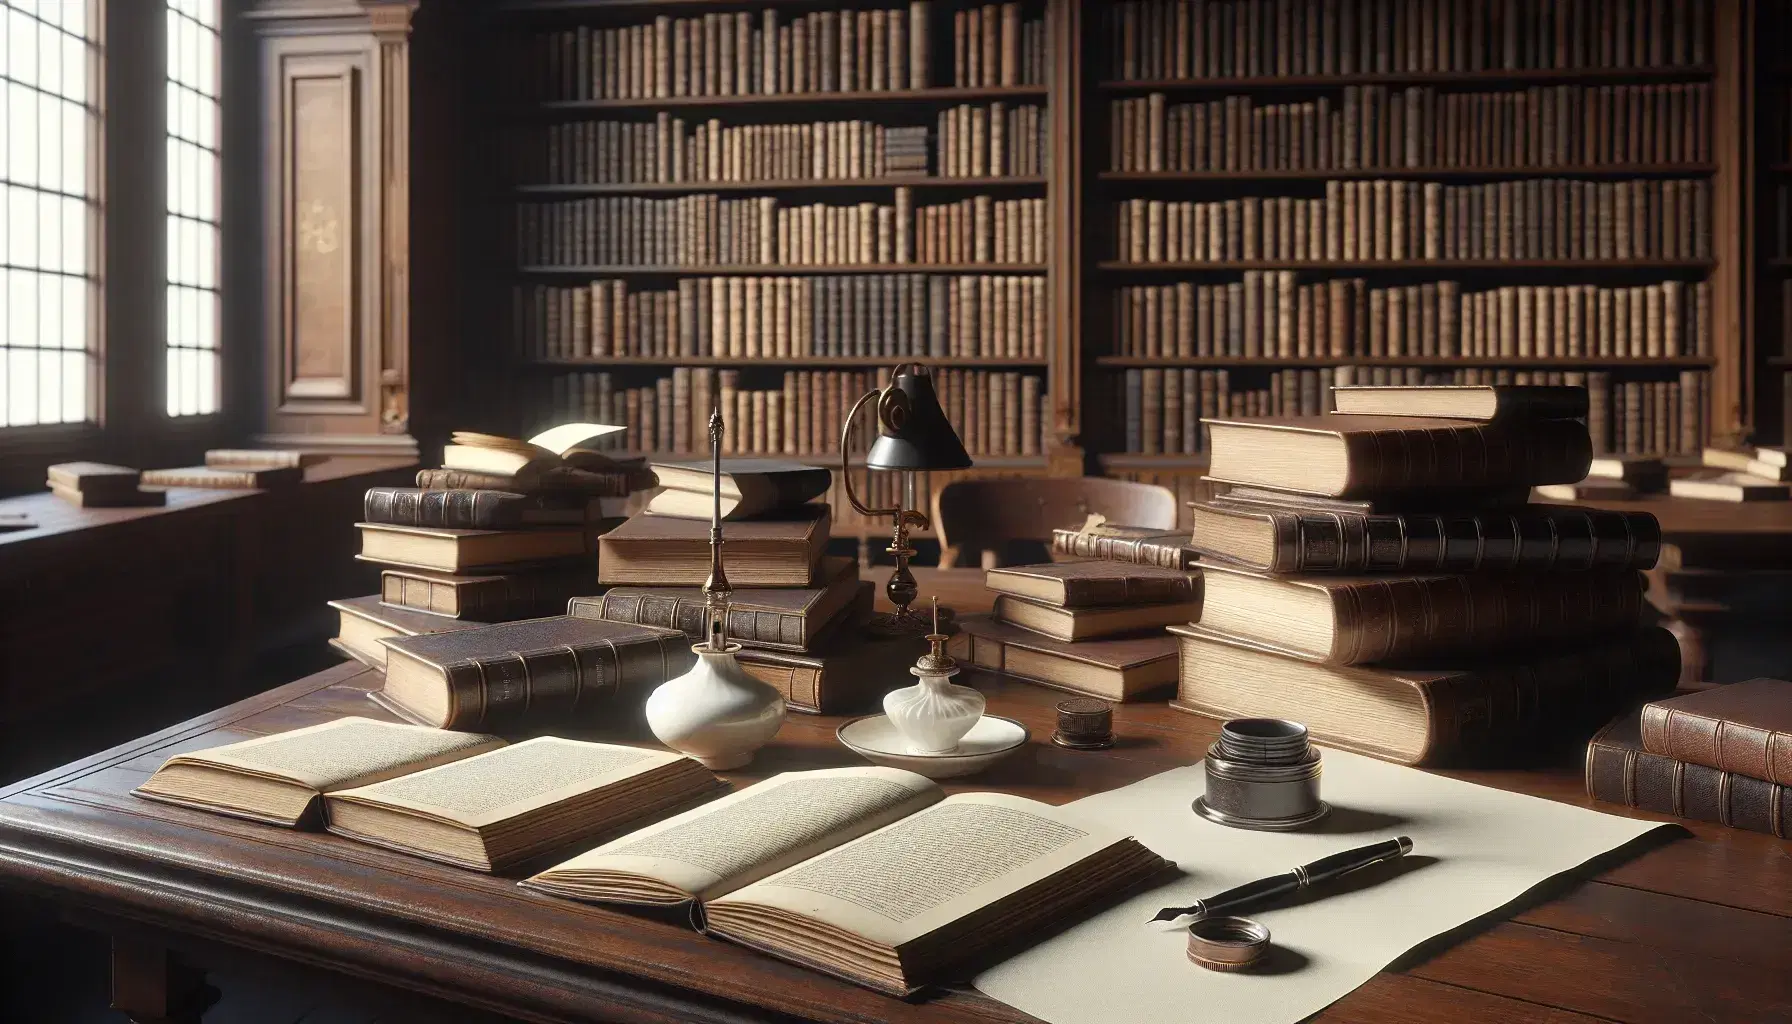 Biblioteca antigua con mesa de madera oscura y libros abiertos, pluma fuente junto a tintero de porcelana, estantes llenos de libros y lámpara de pie que ilumina suavemente.